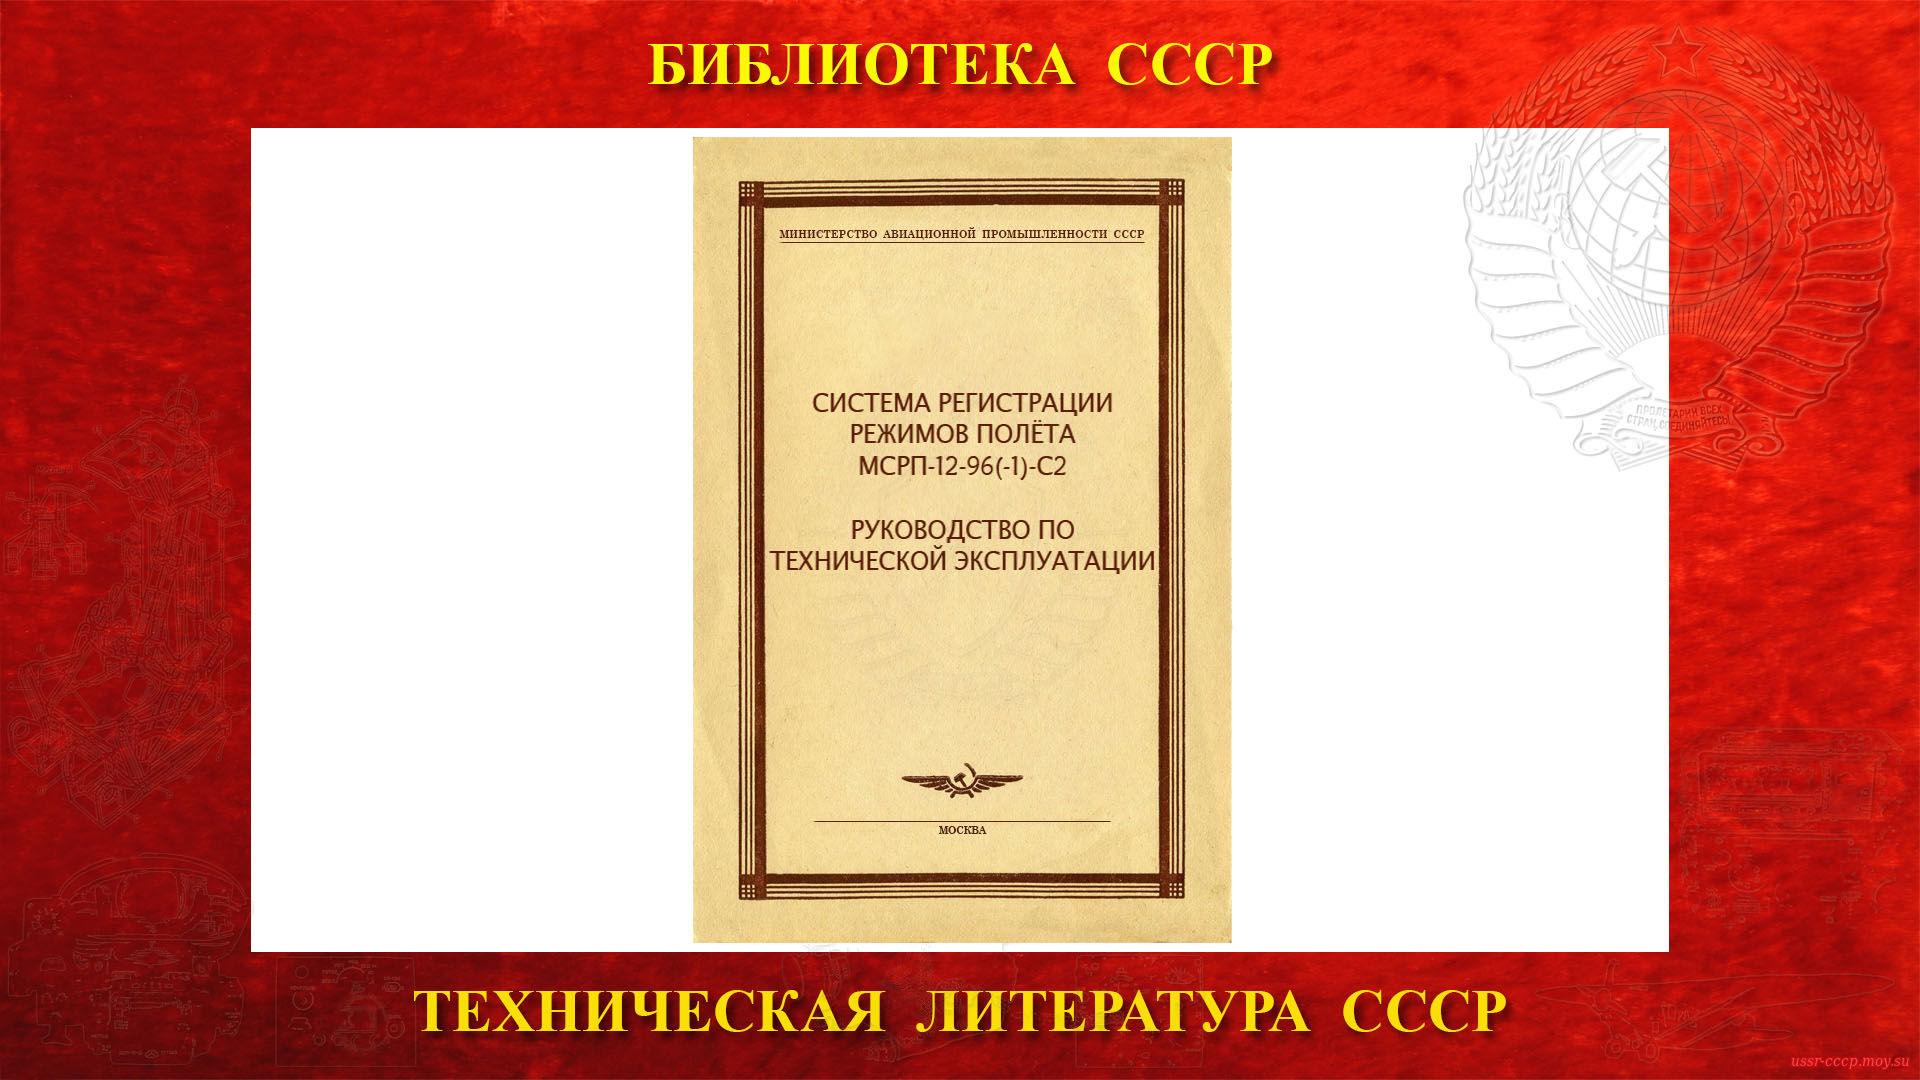 Система регистрации режимов полёта МСРП-12-96(-1)-С2 — Библиотека СССР (повествование)